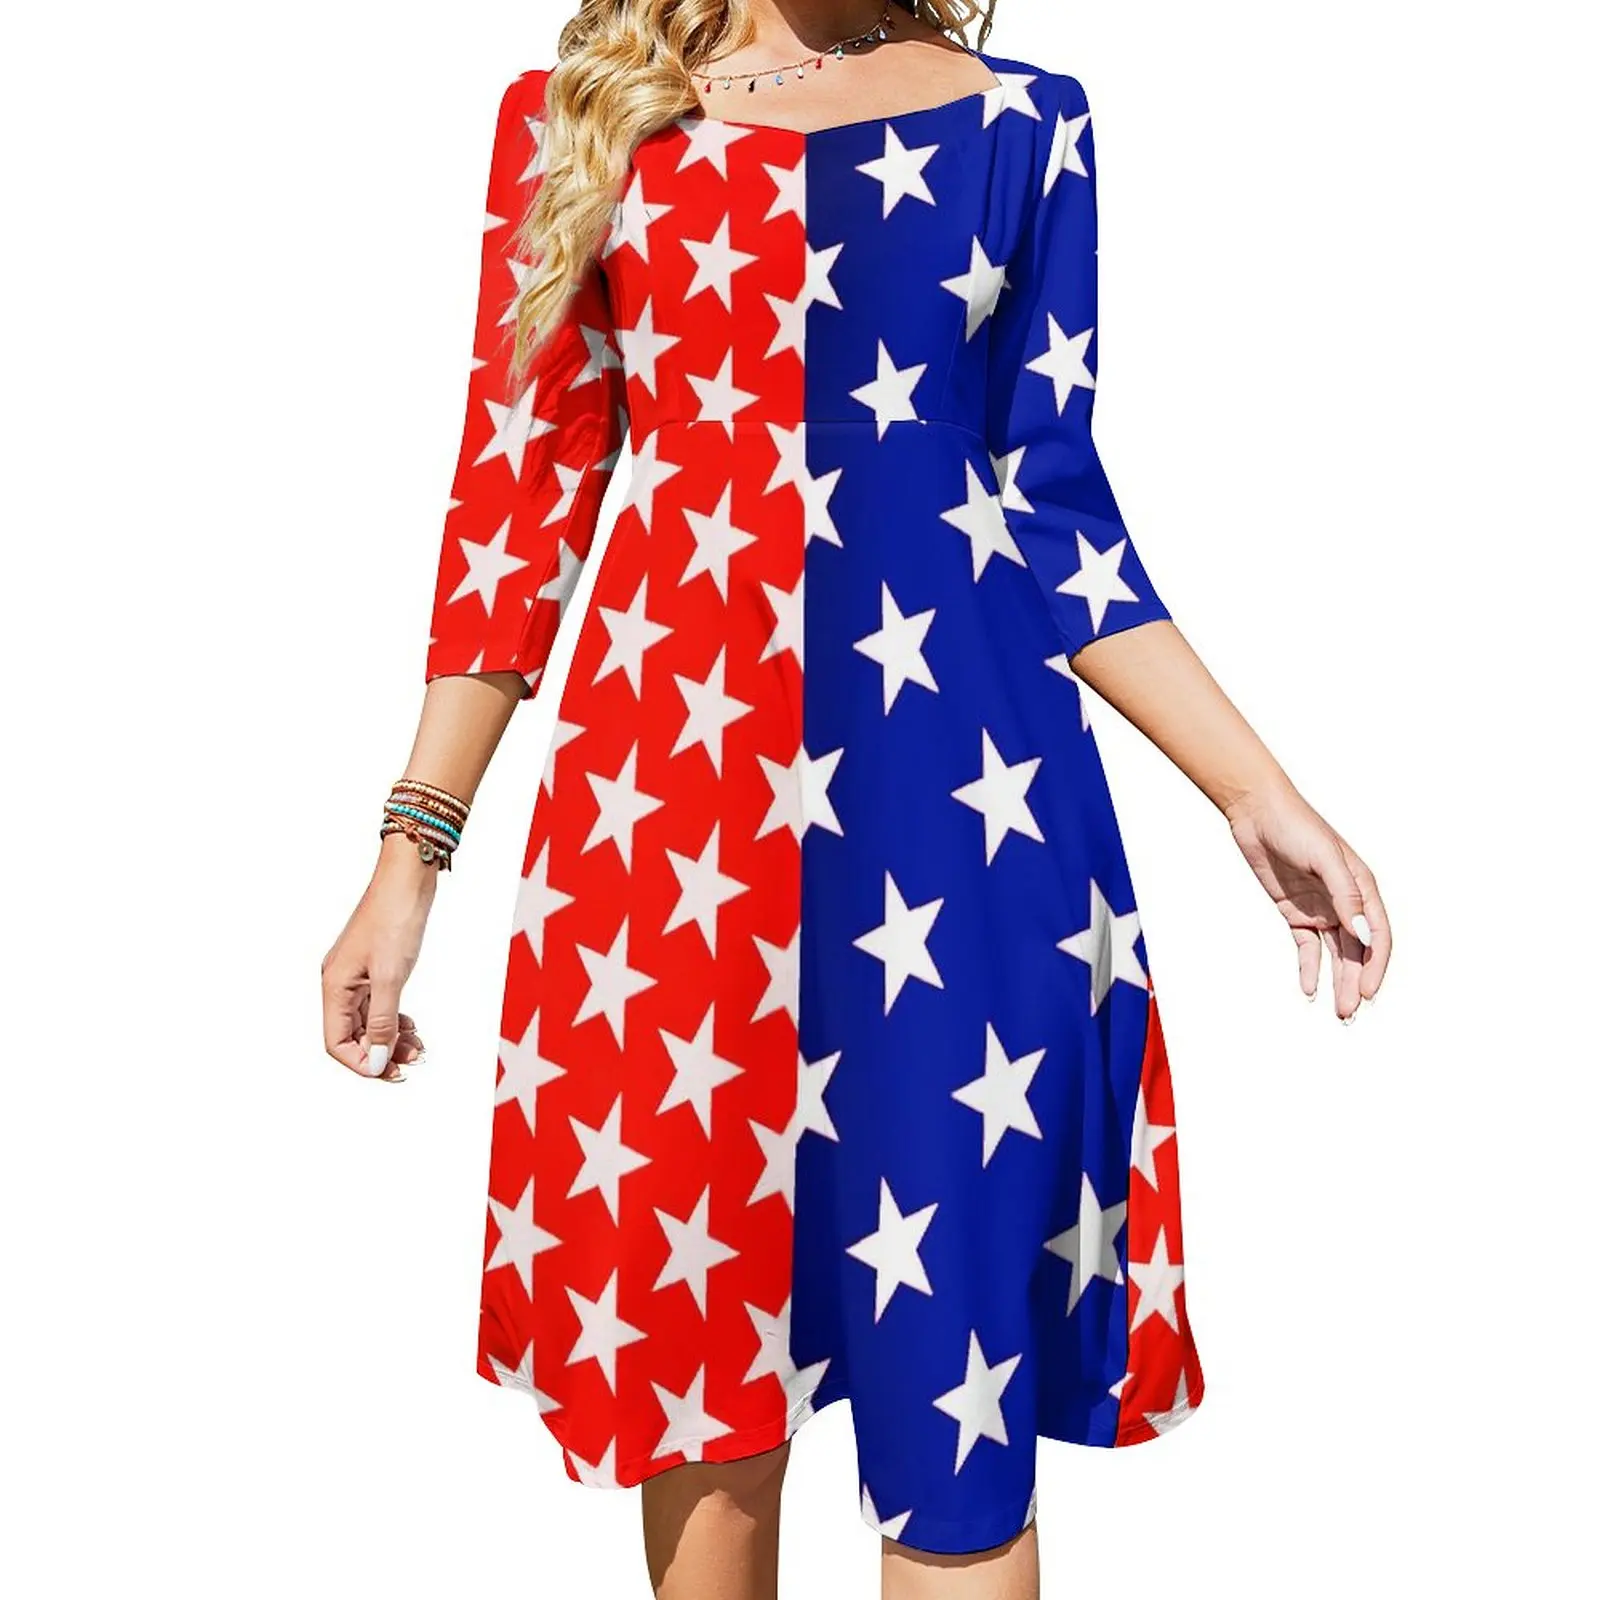 

Платье женское двухцветное с квадратным вырезом, повседневное модное пикантное уличное, с рисунком звезд, красное, синее, большие размеры 5XL 6XL, на лето